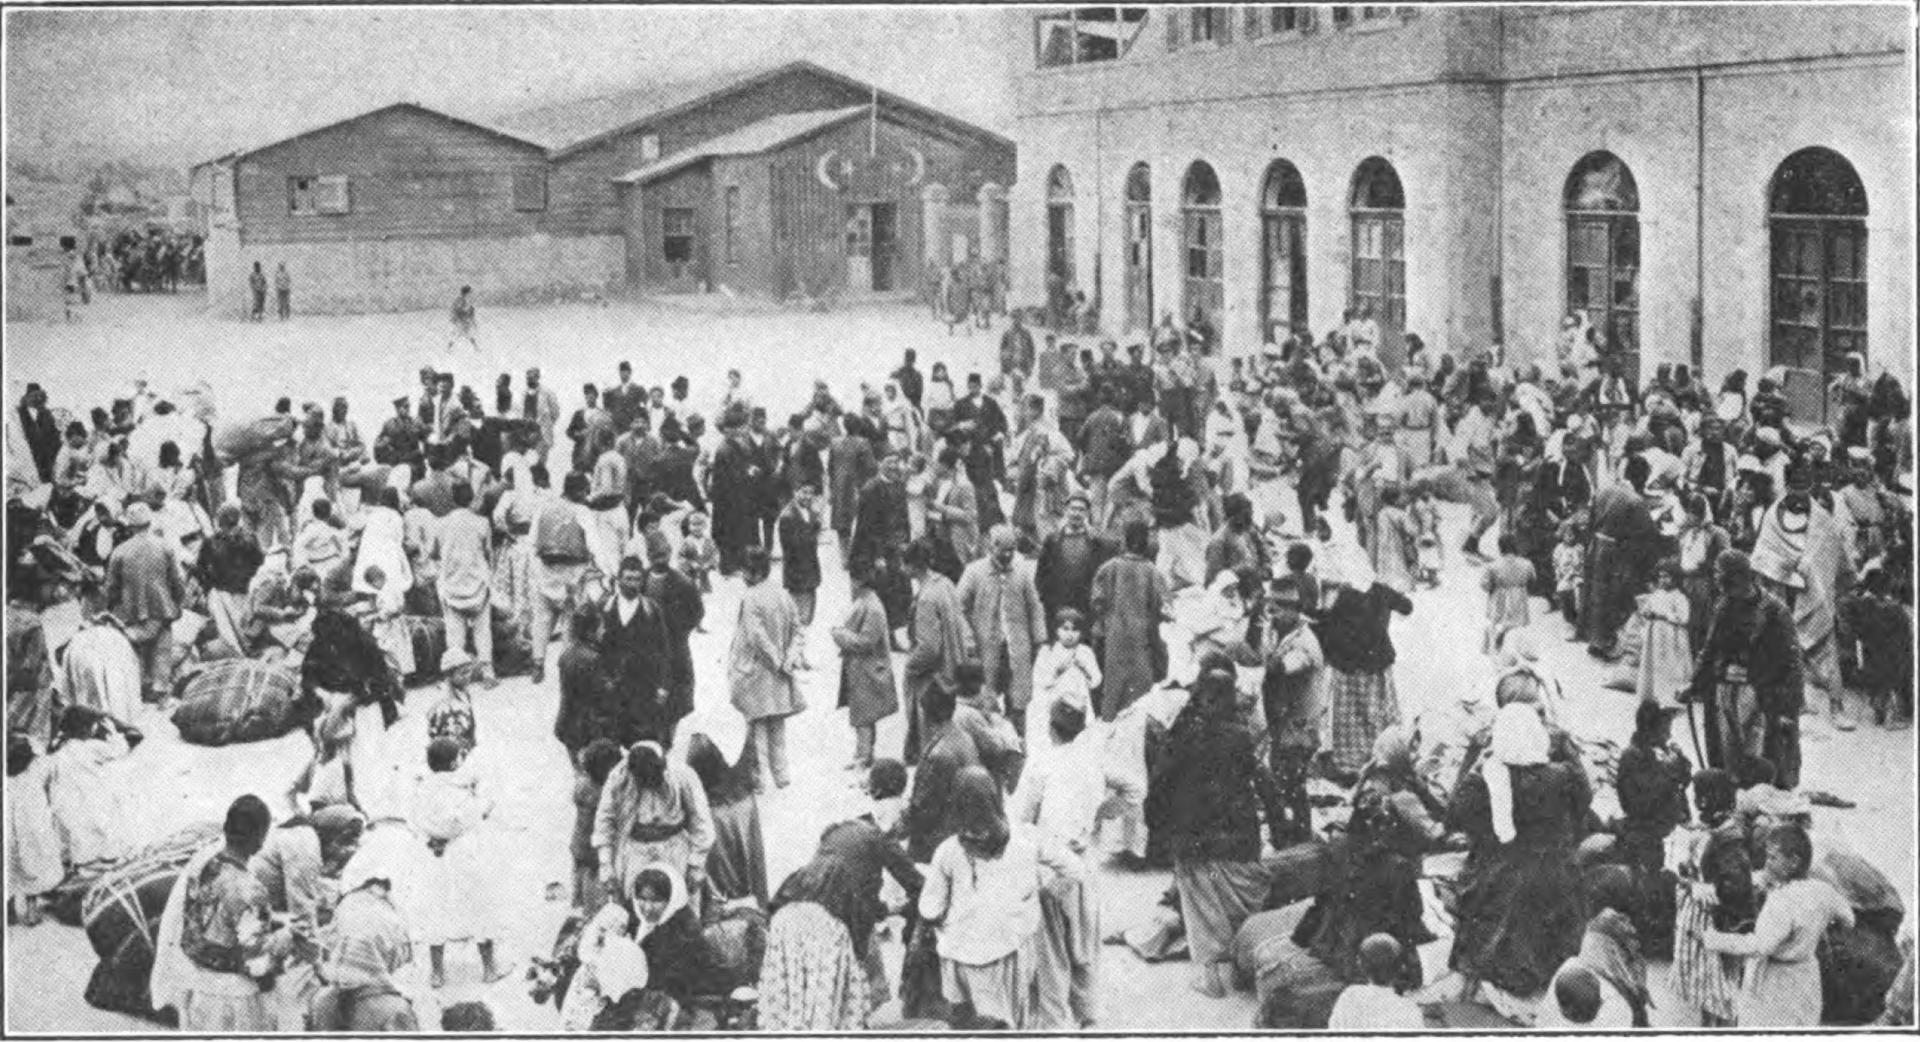 تجمع الأرمن في الميدان الرئيسي للمدينة بأمر من السلطات لترحيلهم لكن ذبحوا في النهاية